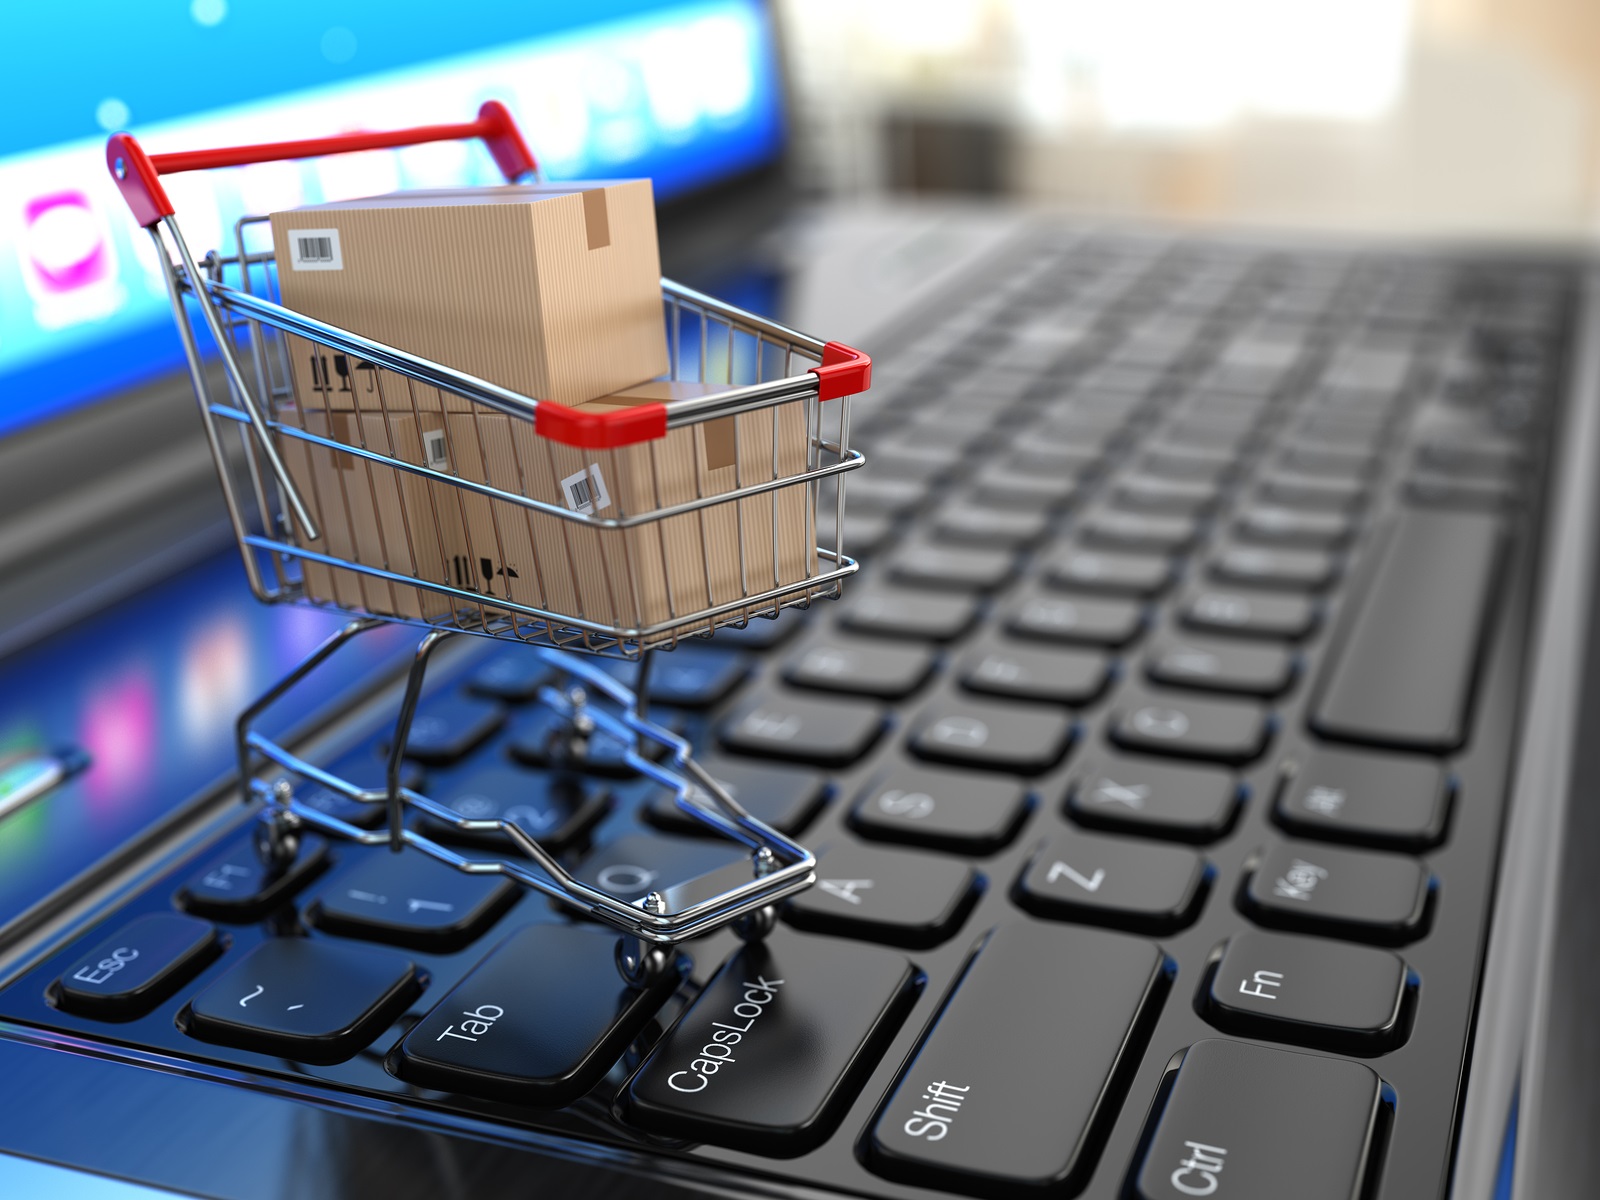 Nuvem Shop capta U$7M para acelerar o e-commerce na América Latina